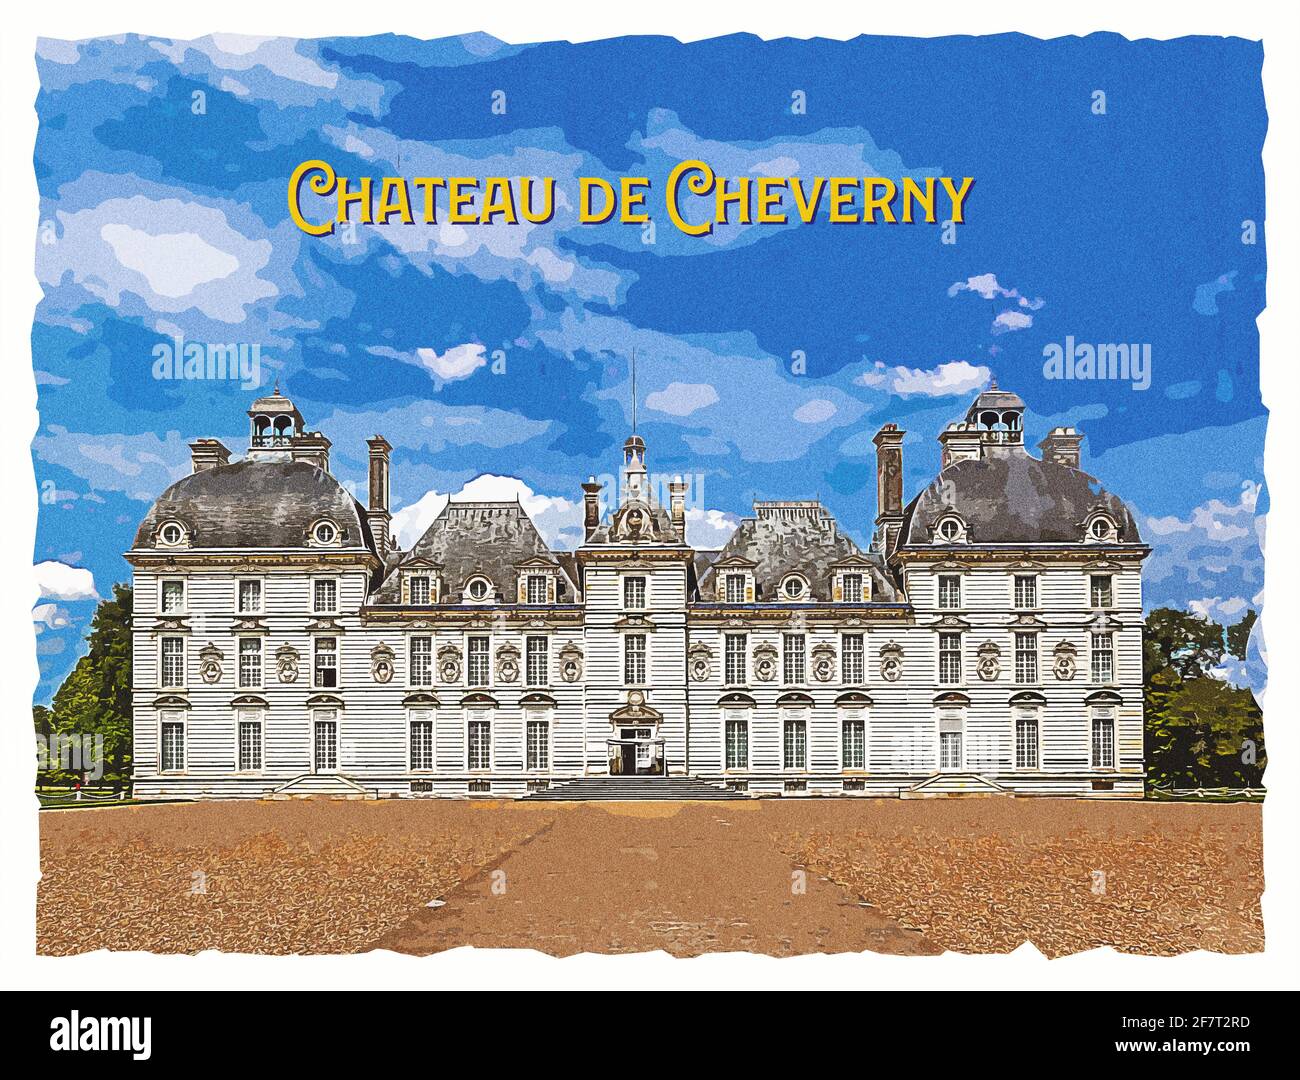 Berühmte Burg des Loire-Tals Chateau de Cheverny. Cheverny, Loir-et-Cher, Frankreich. Alte Abbildung im Fotostil. Stockfoto